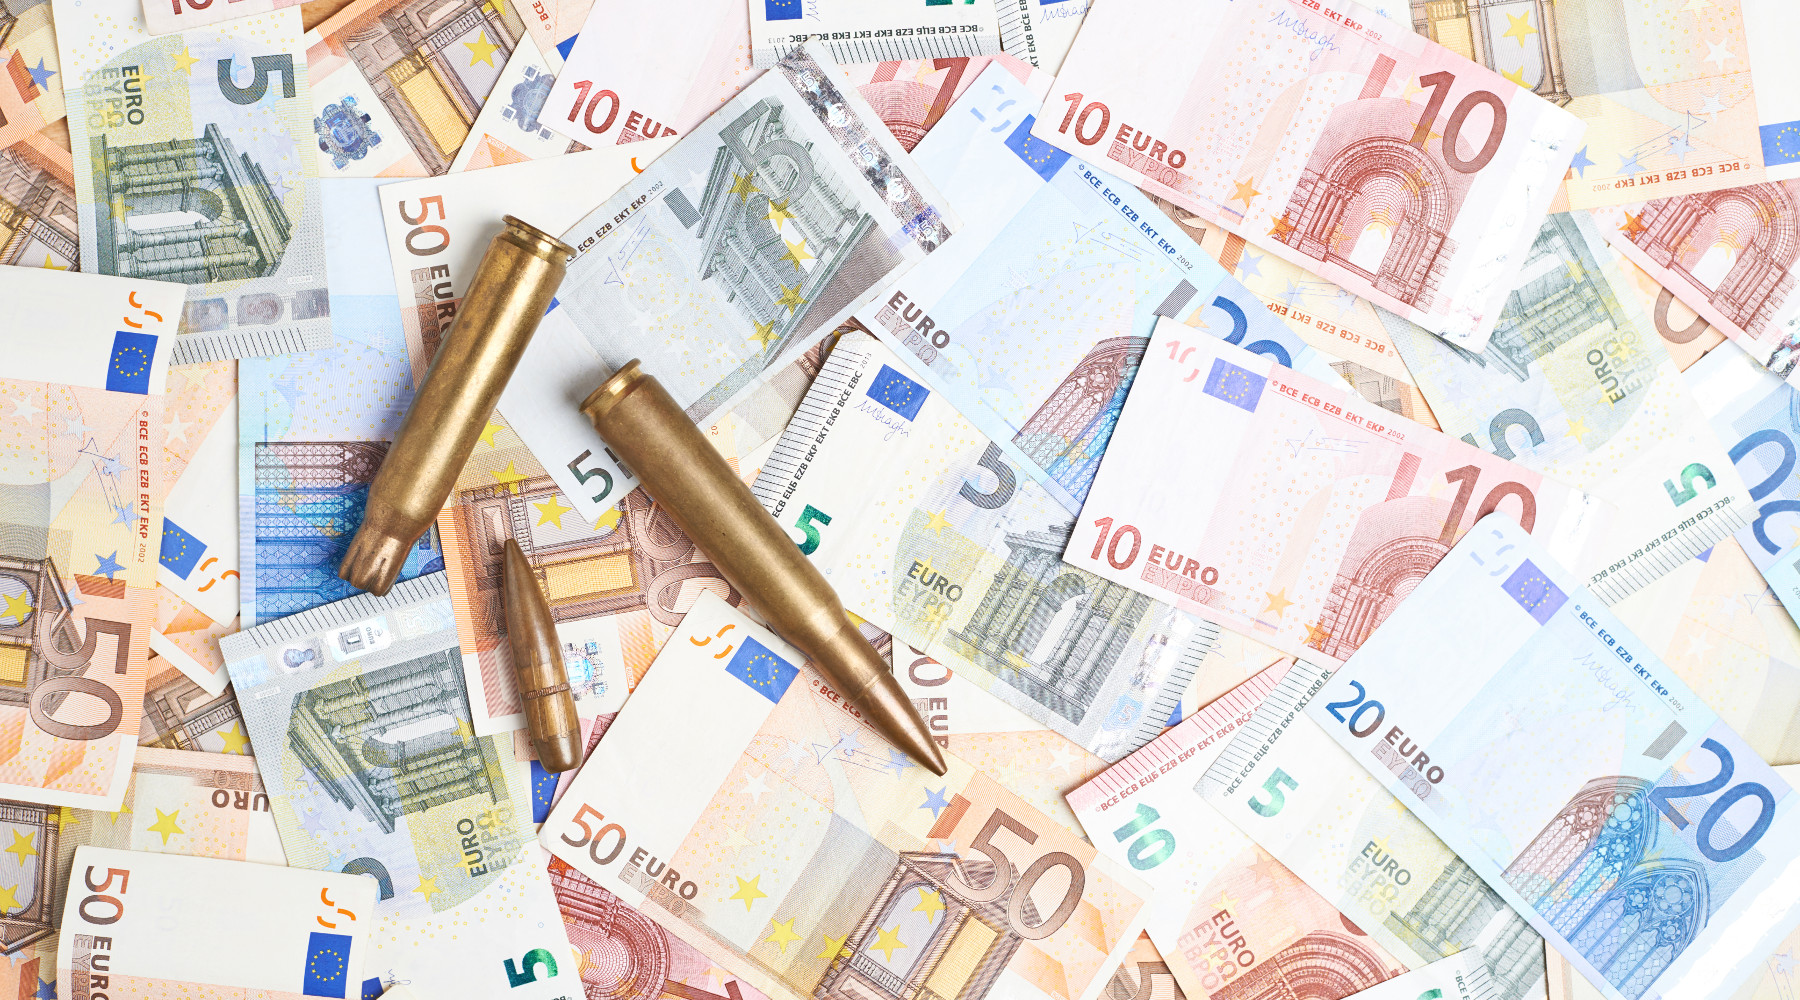 Valore economico della caccia: munizioni a palla su banconote in euro